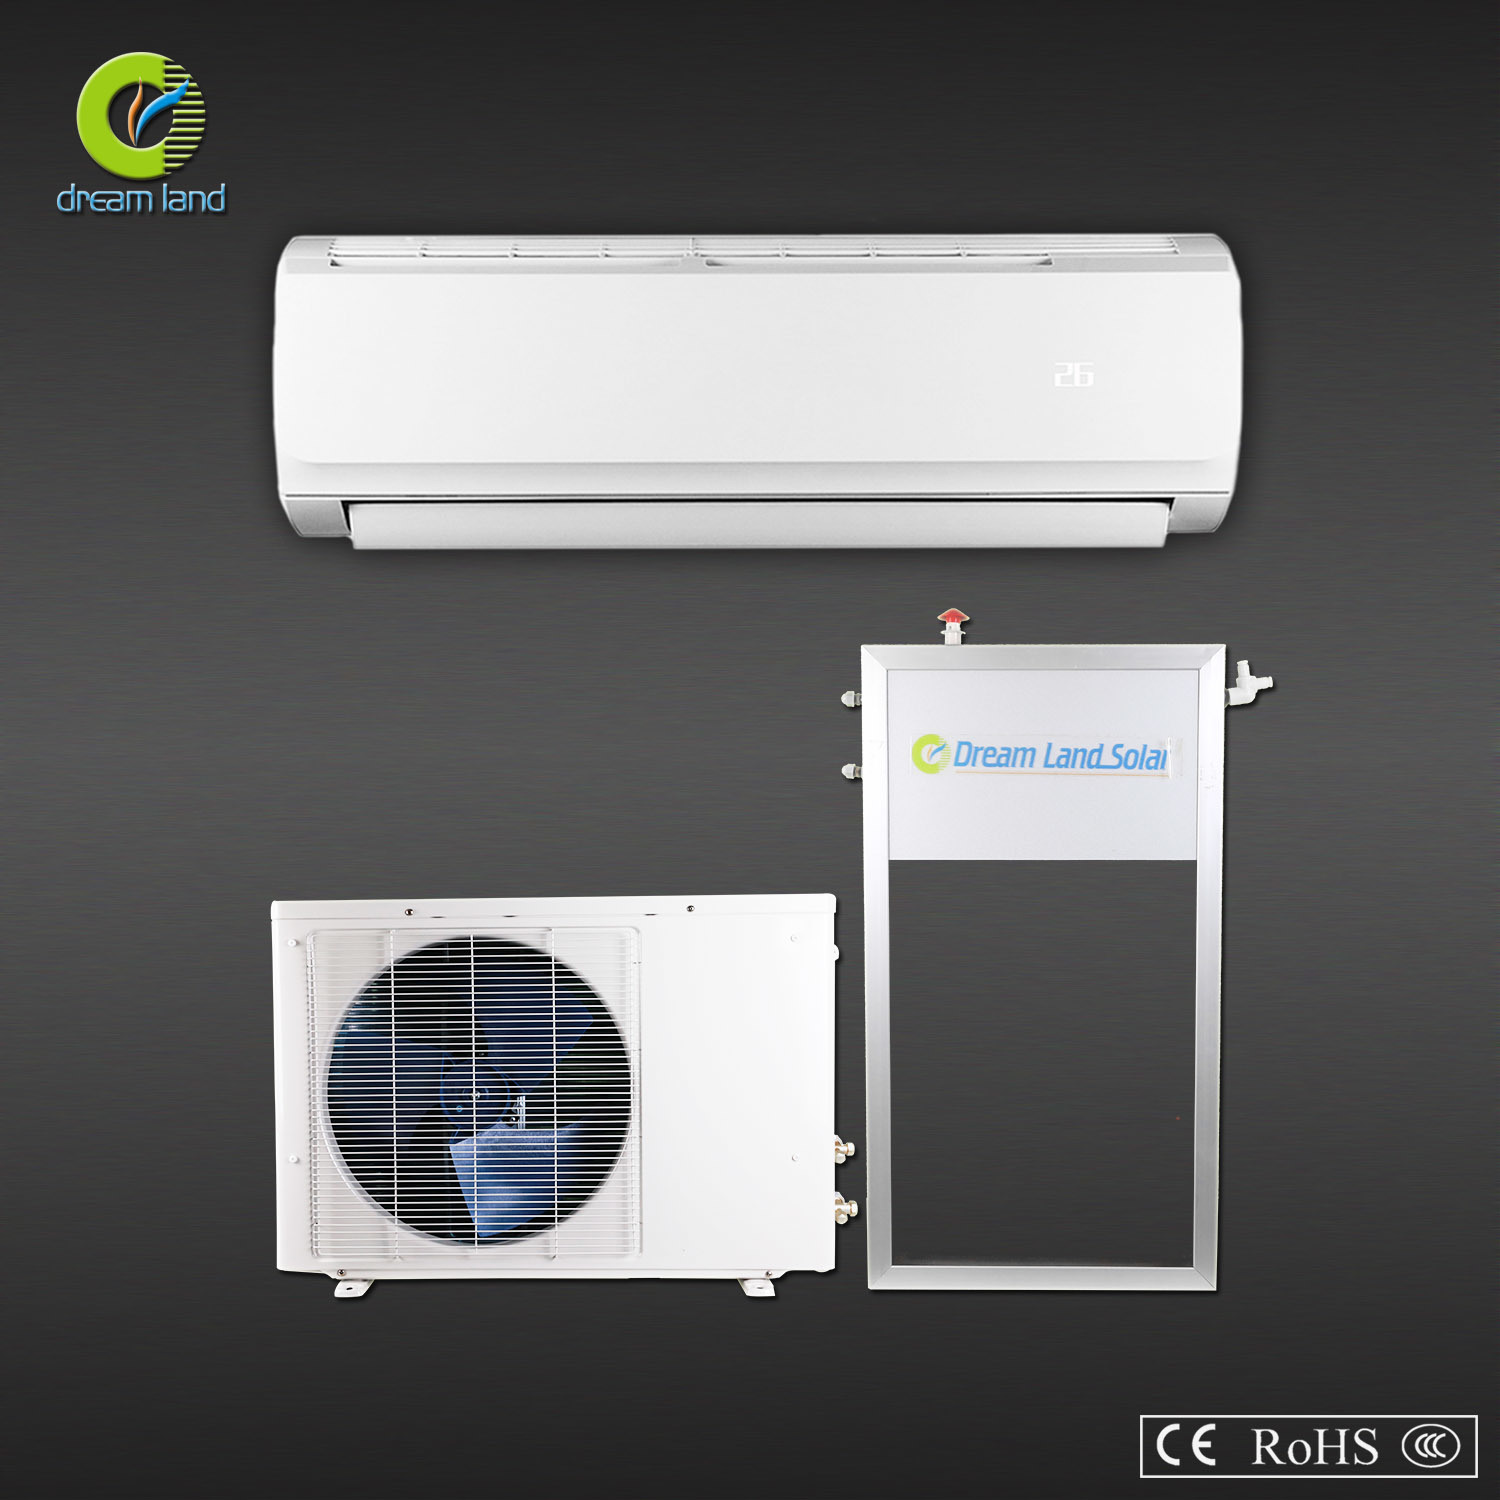 Flat Panel Solar Air Conditioner